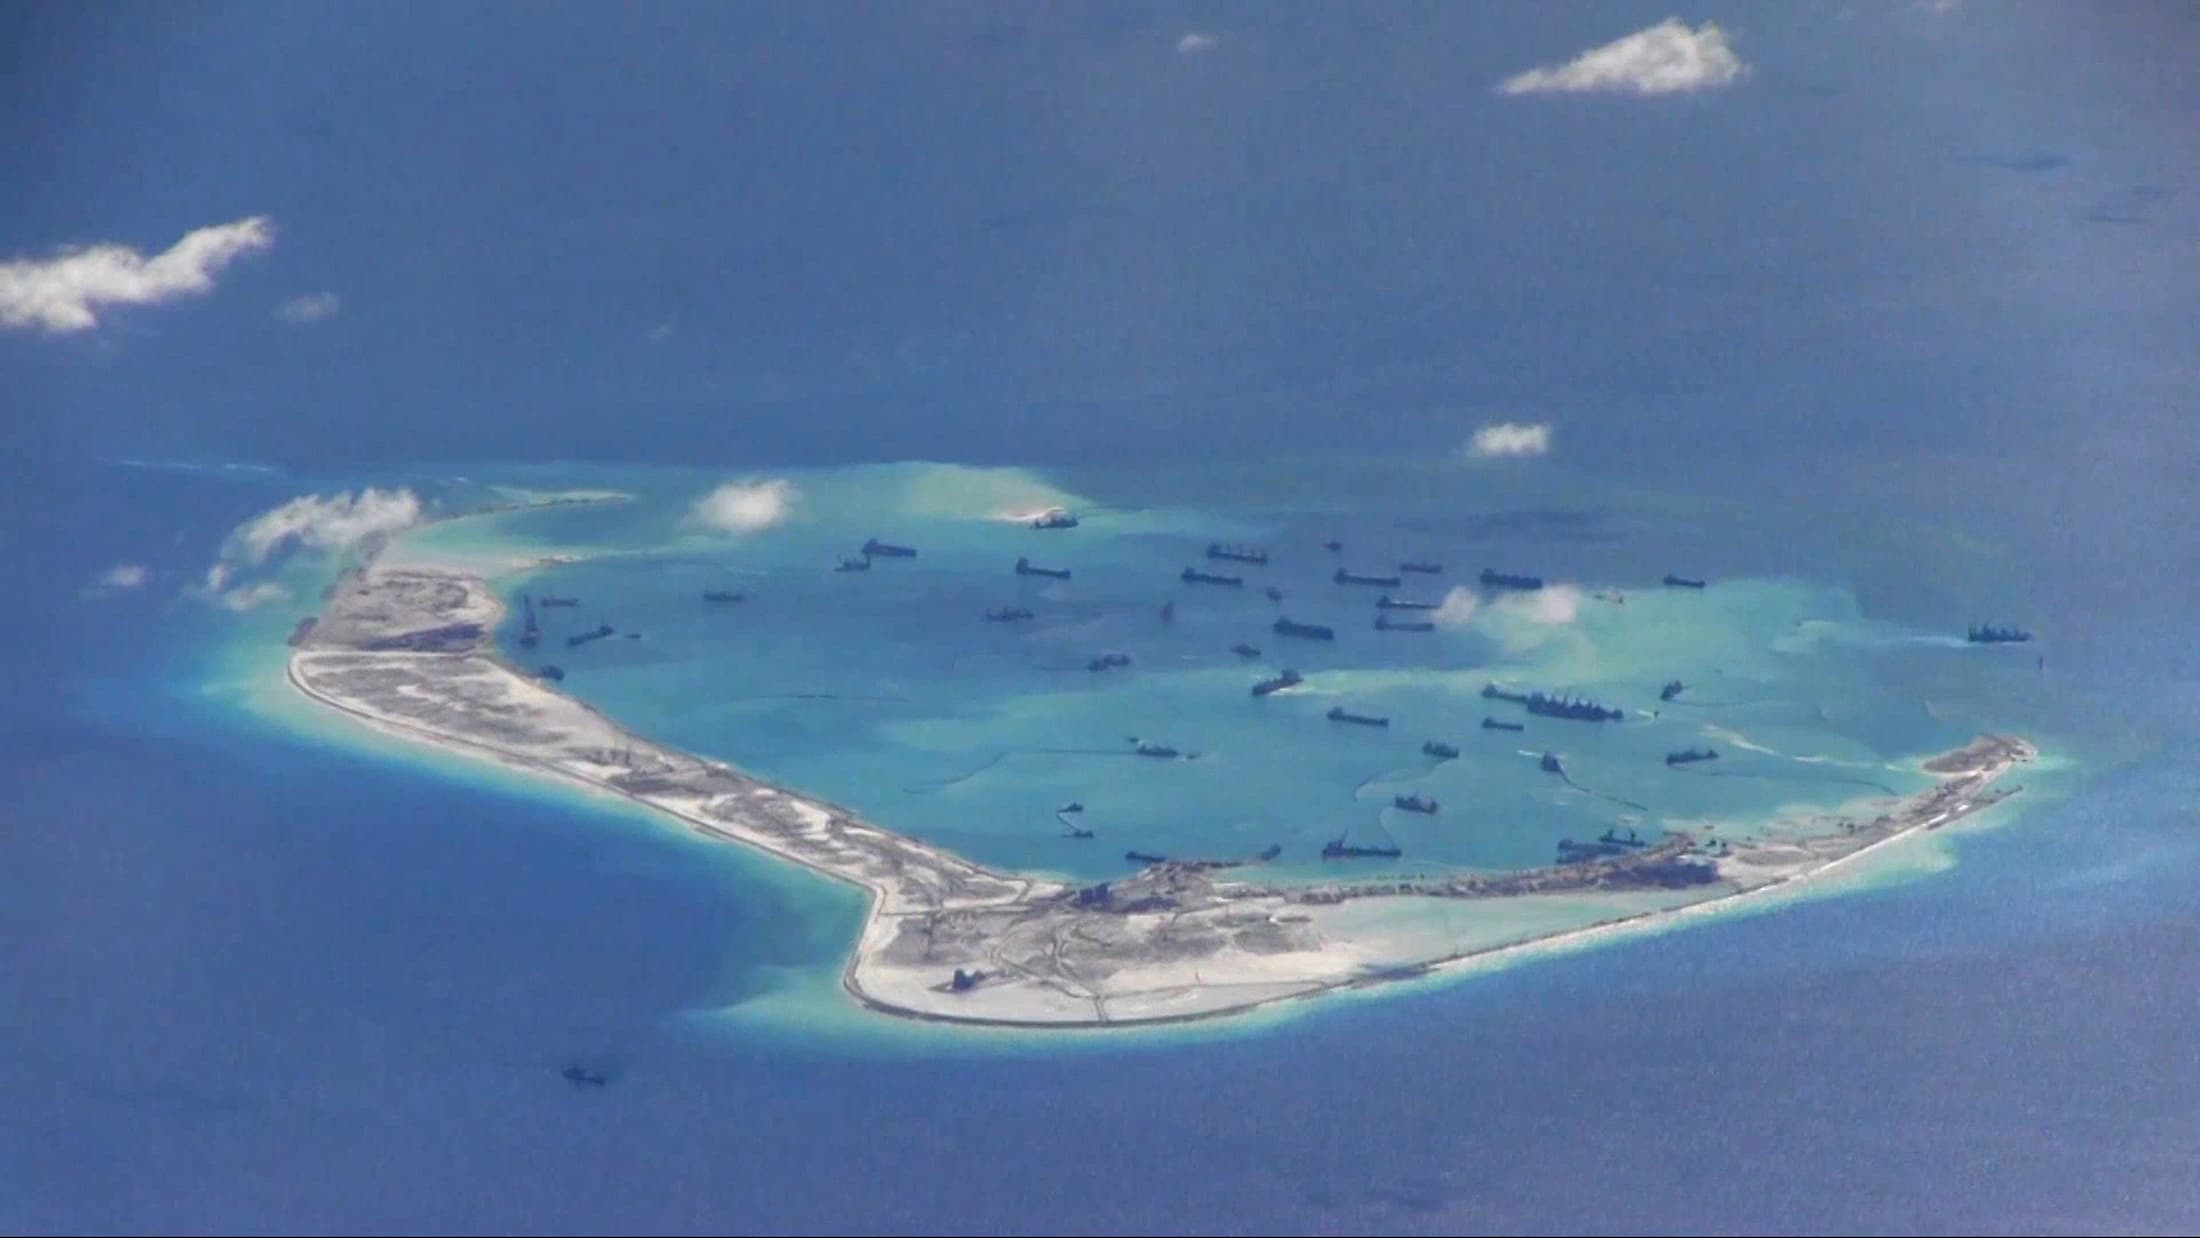 Ilhas Spratly | Navio filipino e embarcação chinesa colidem